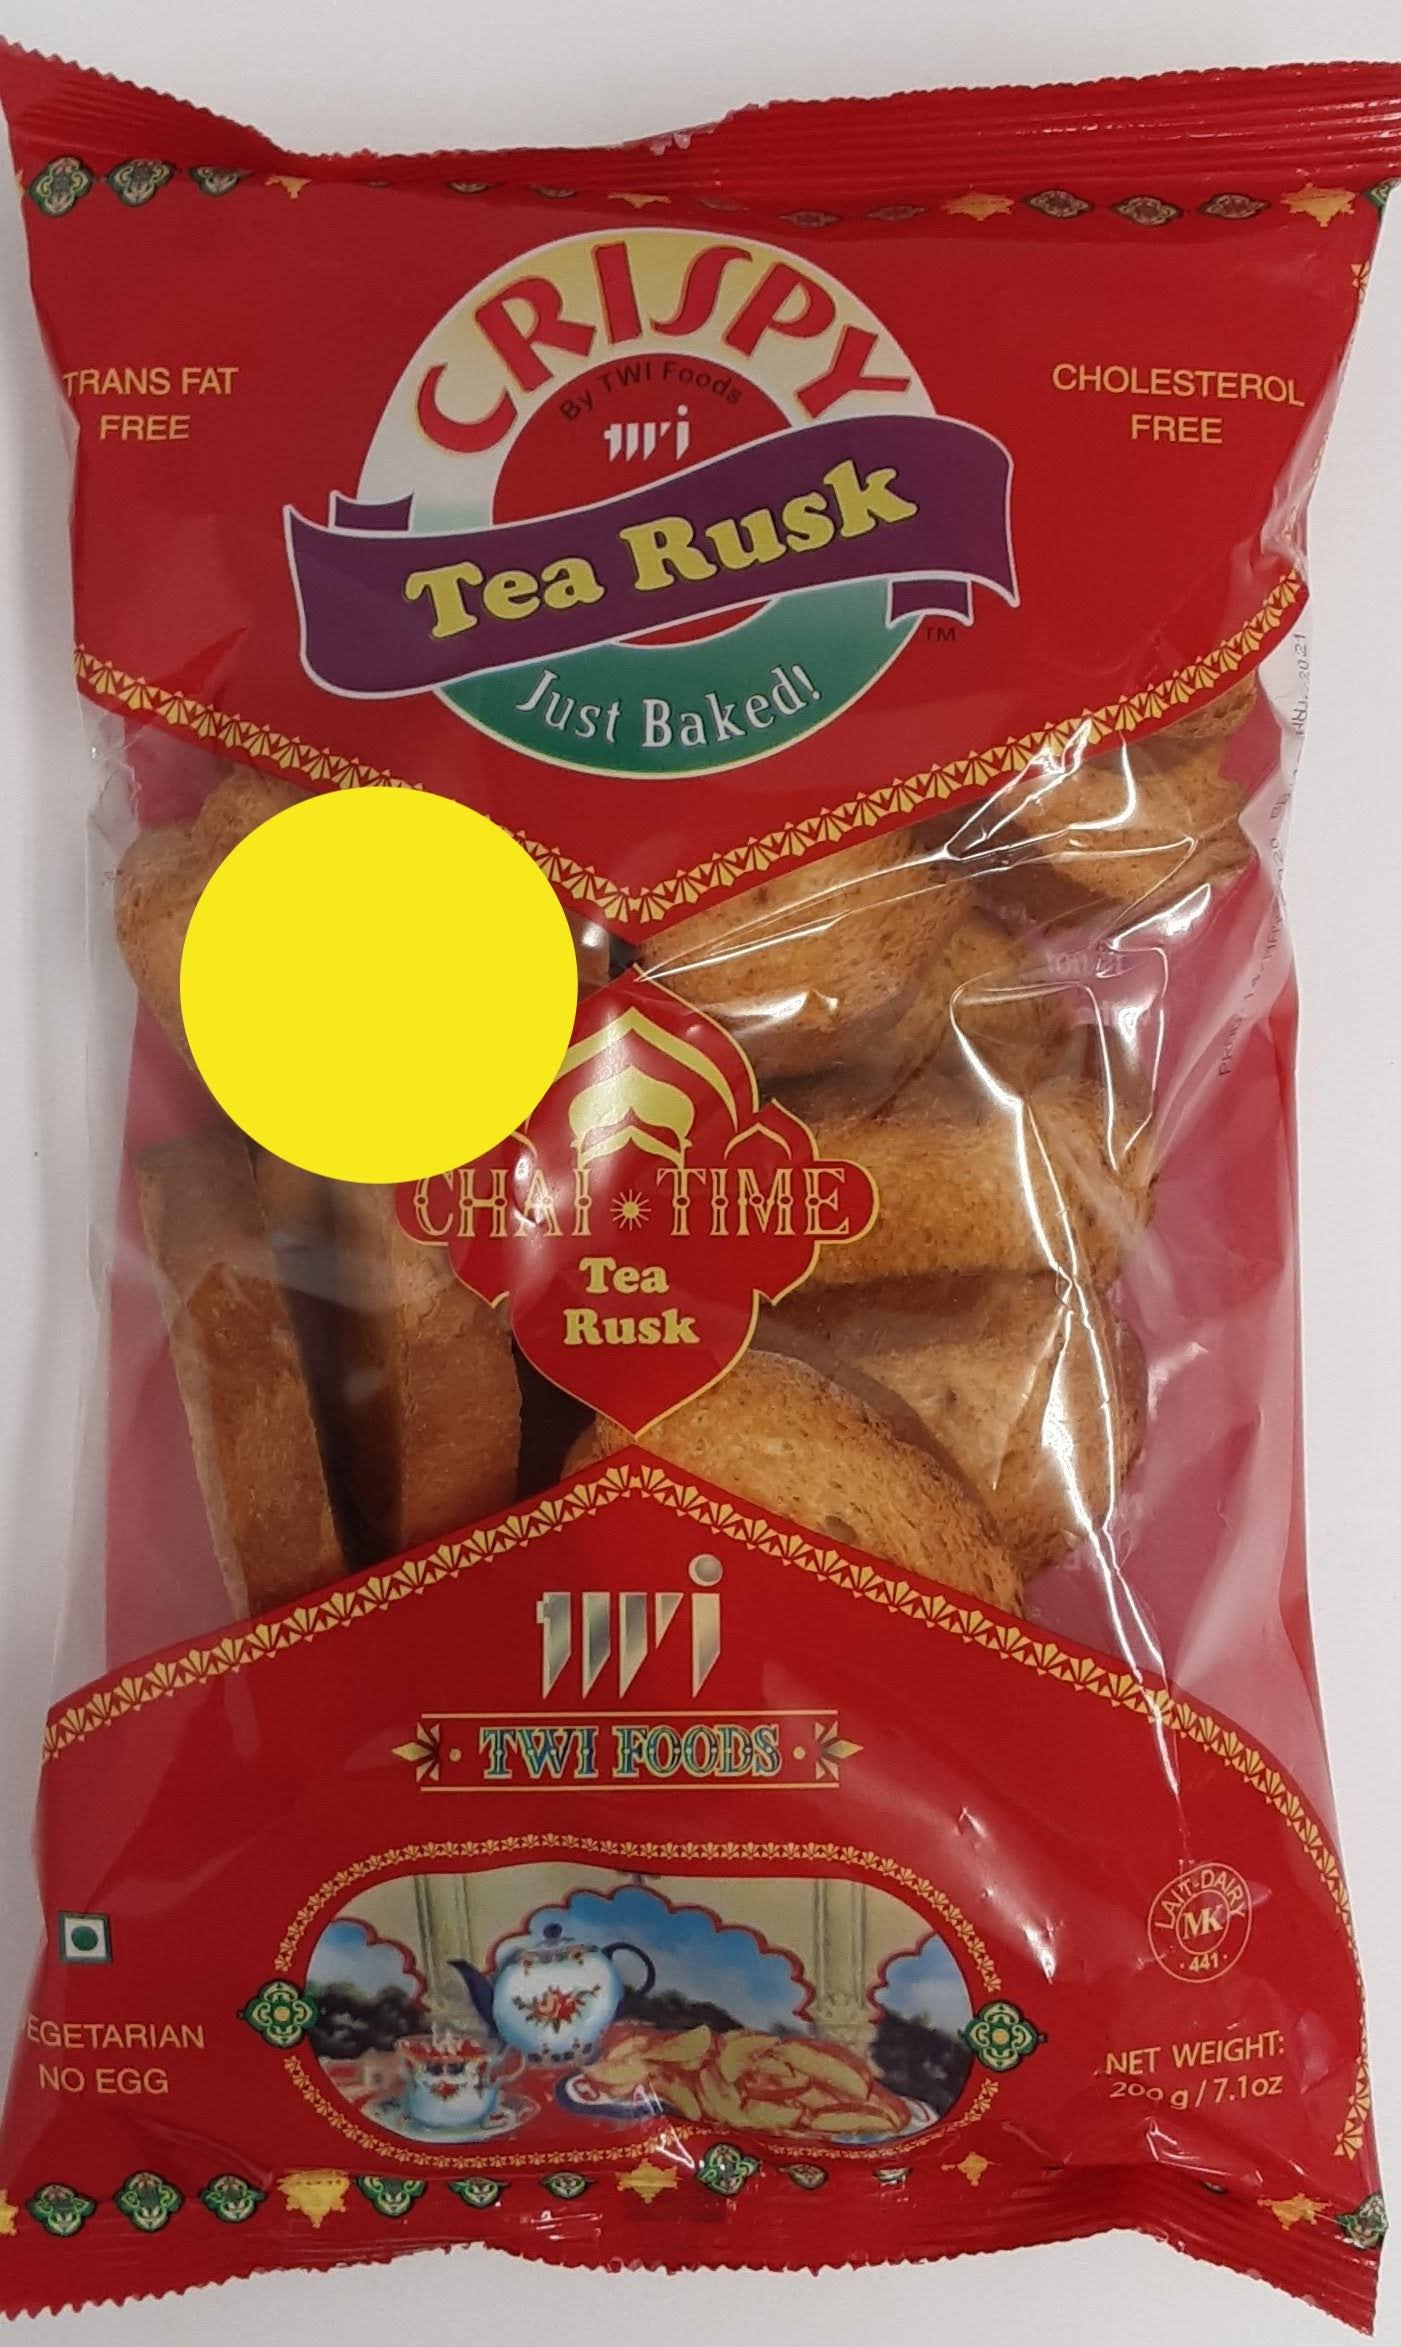 Crispy Tea Rusk Toast - 7.1oz